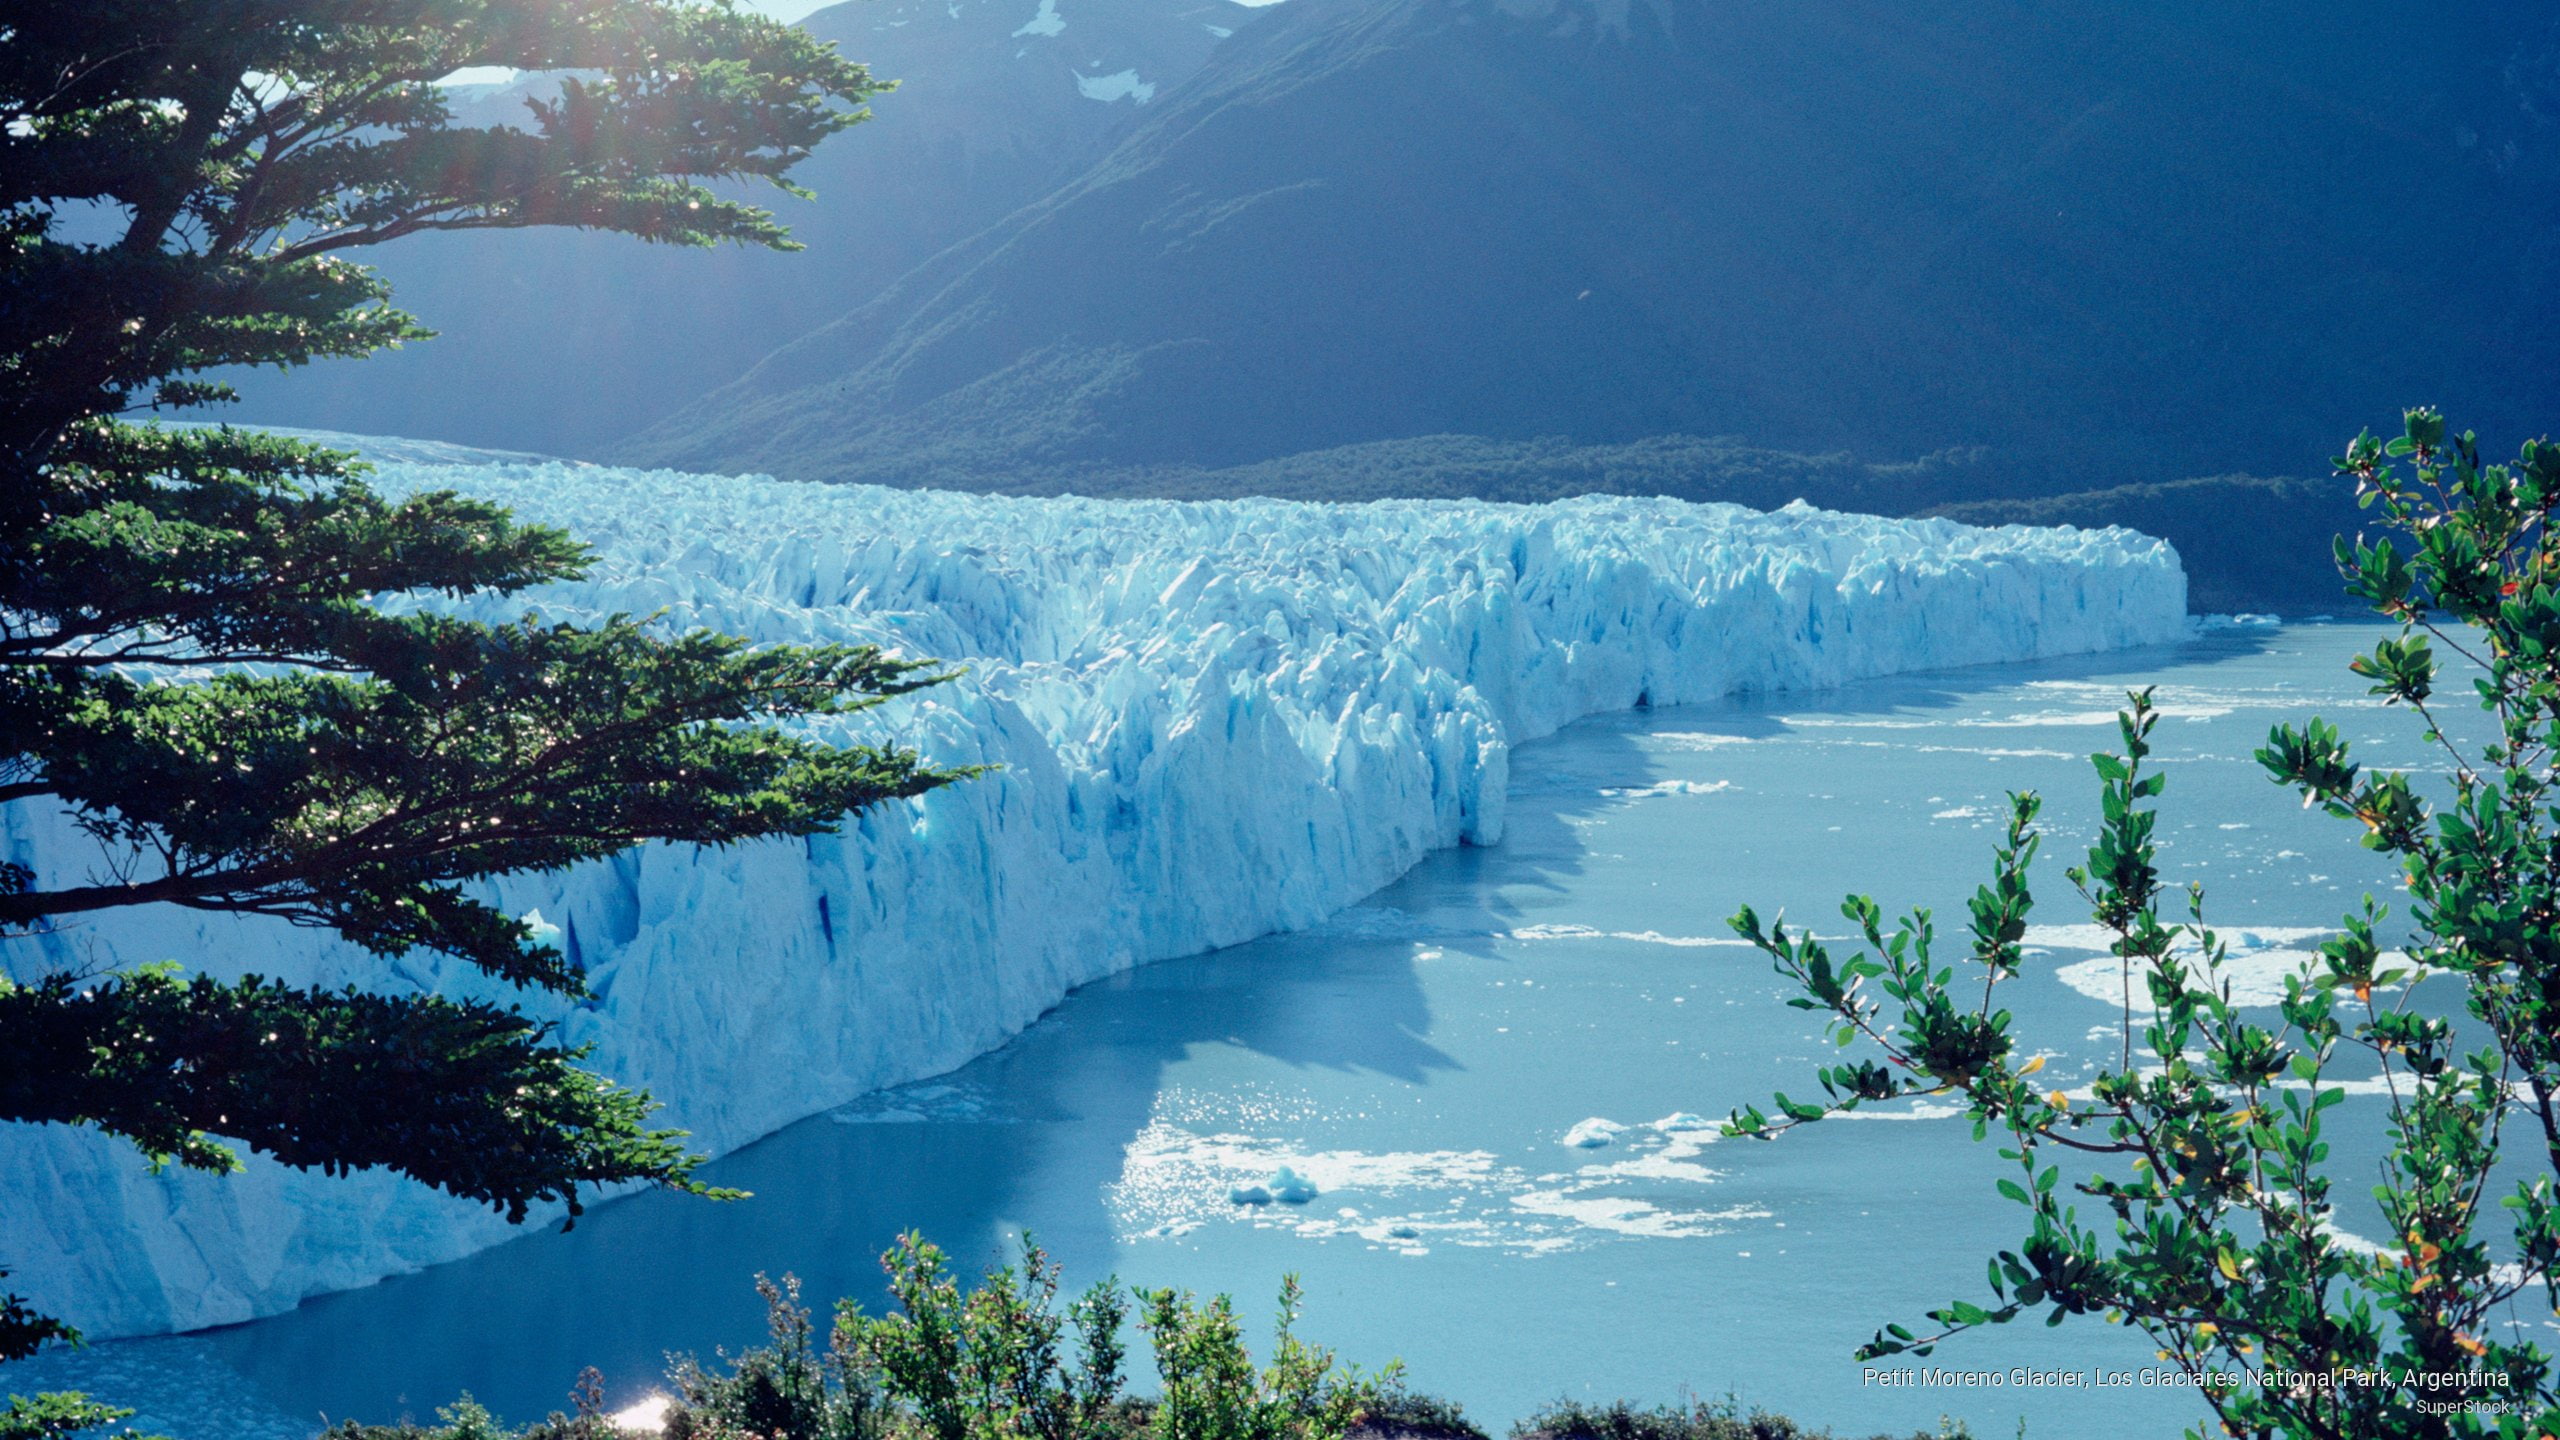 Petit Moreno Glacier, Los Glaciares National Park, Argentina